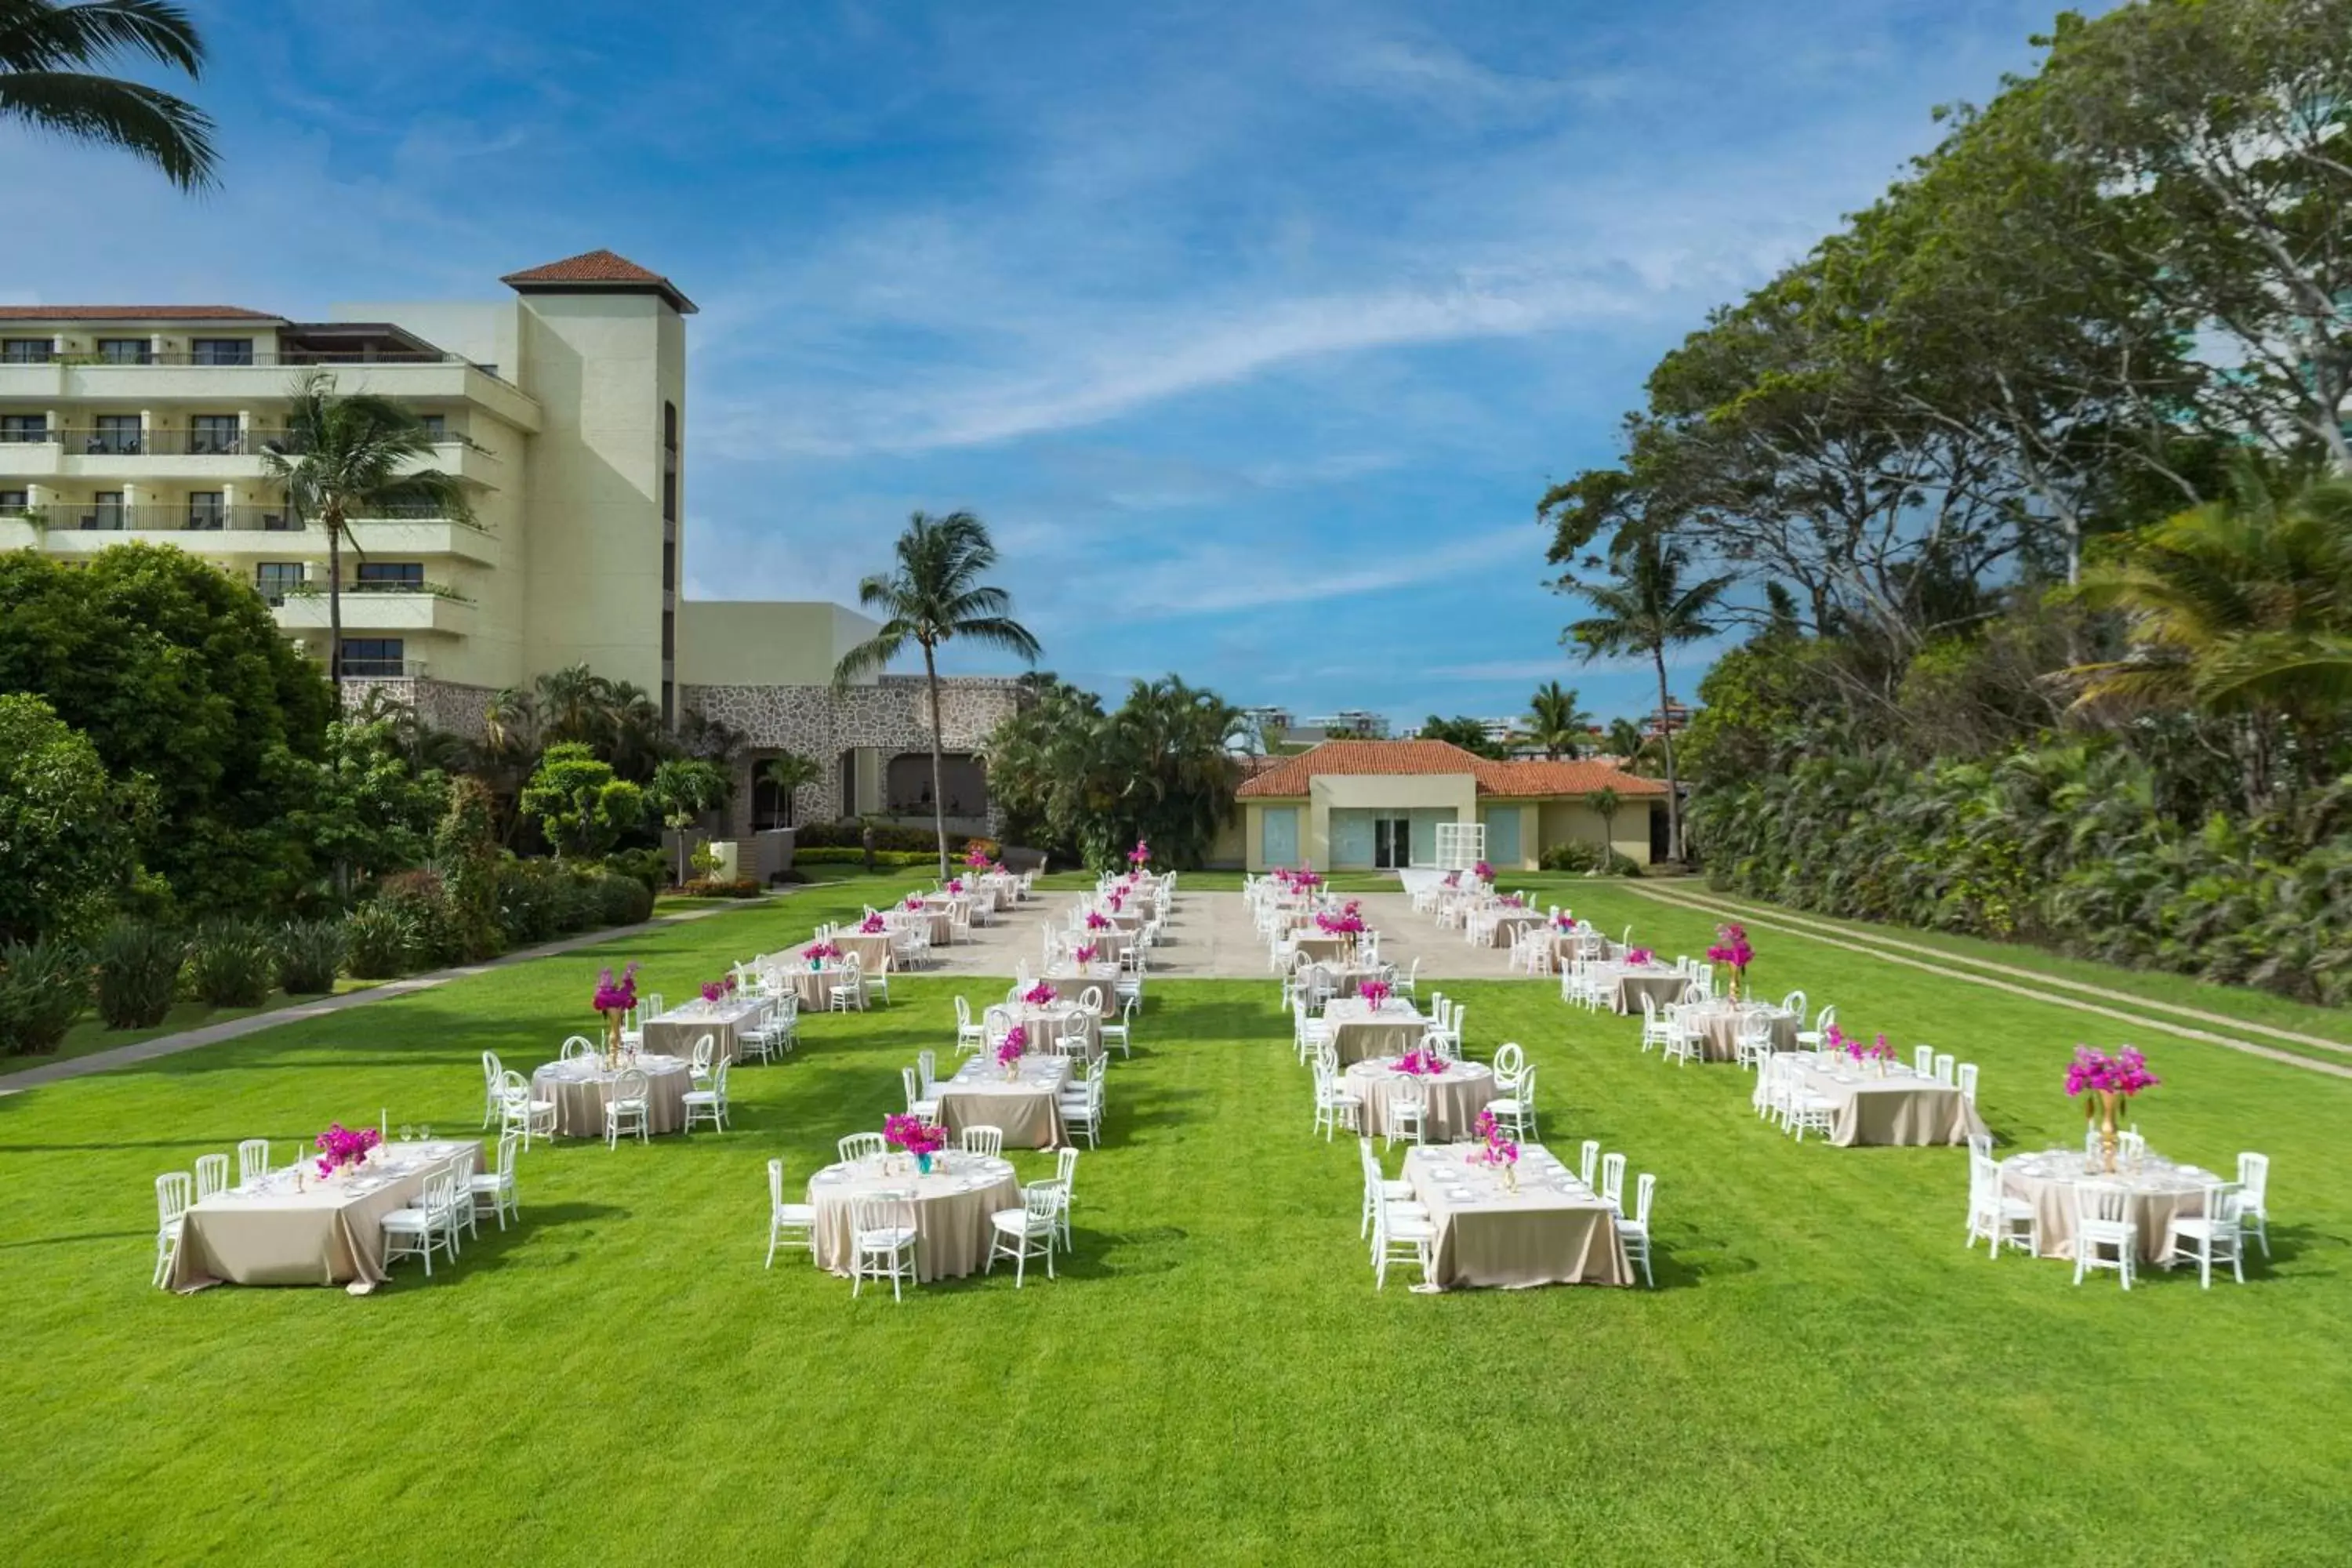 Meeting/conference room, Banquet Facilities in Marriott Puerto Vallarta Resort & Spa